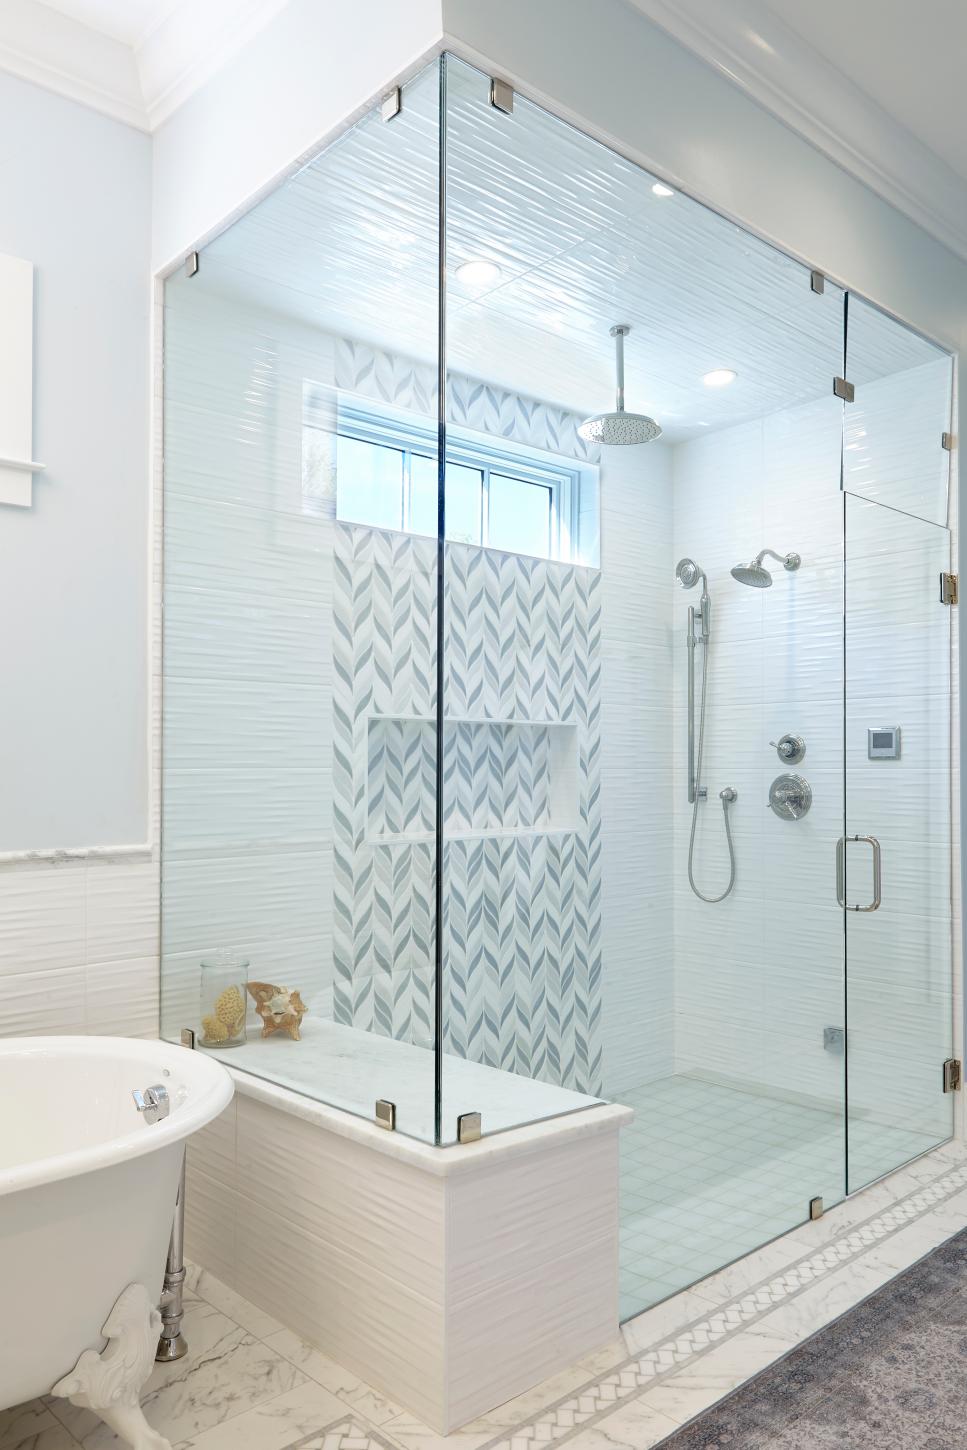 Bathroom Design Ideas With Window In Shower BEST HOME DESIGN IDEAS